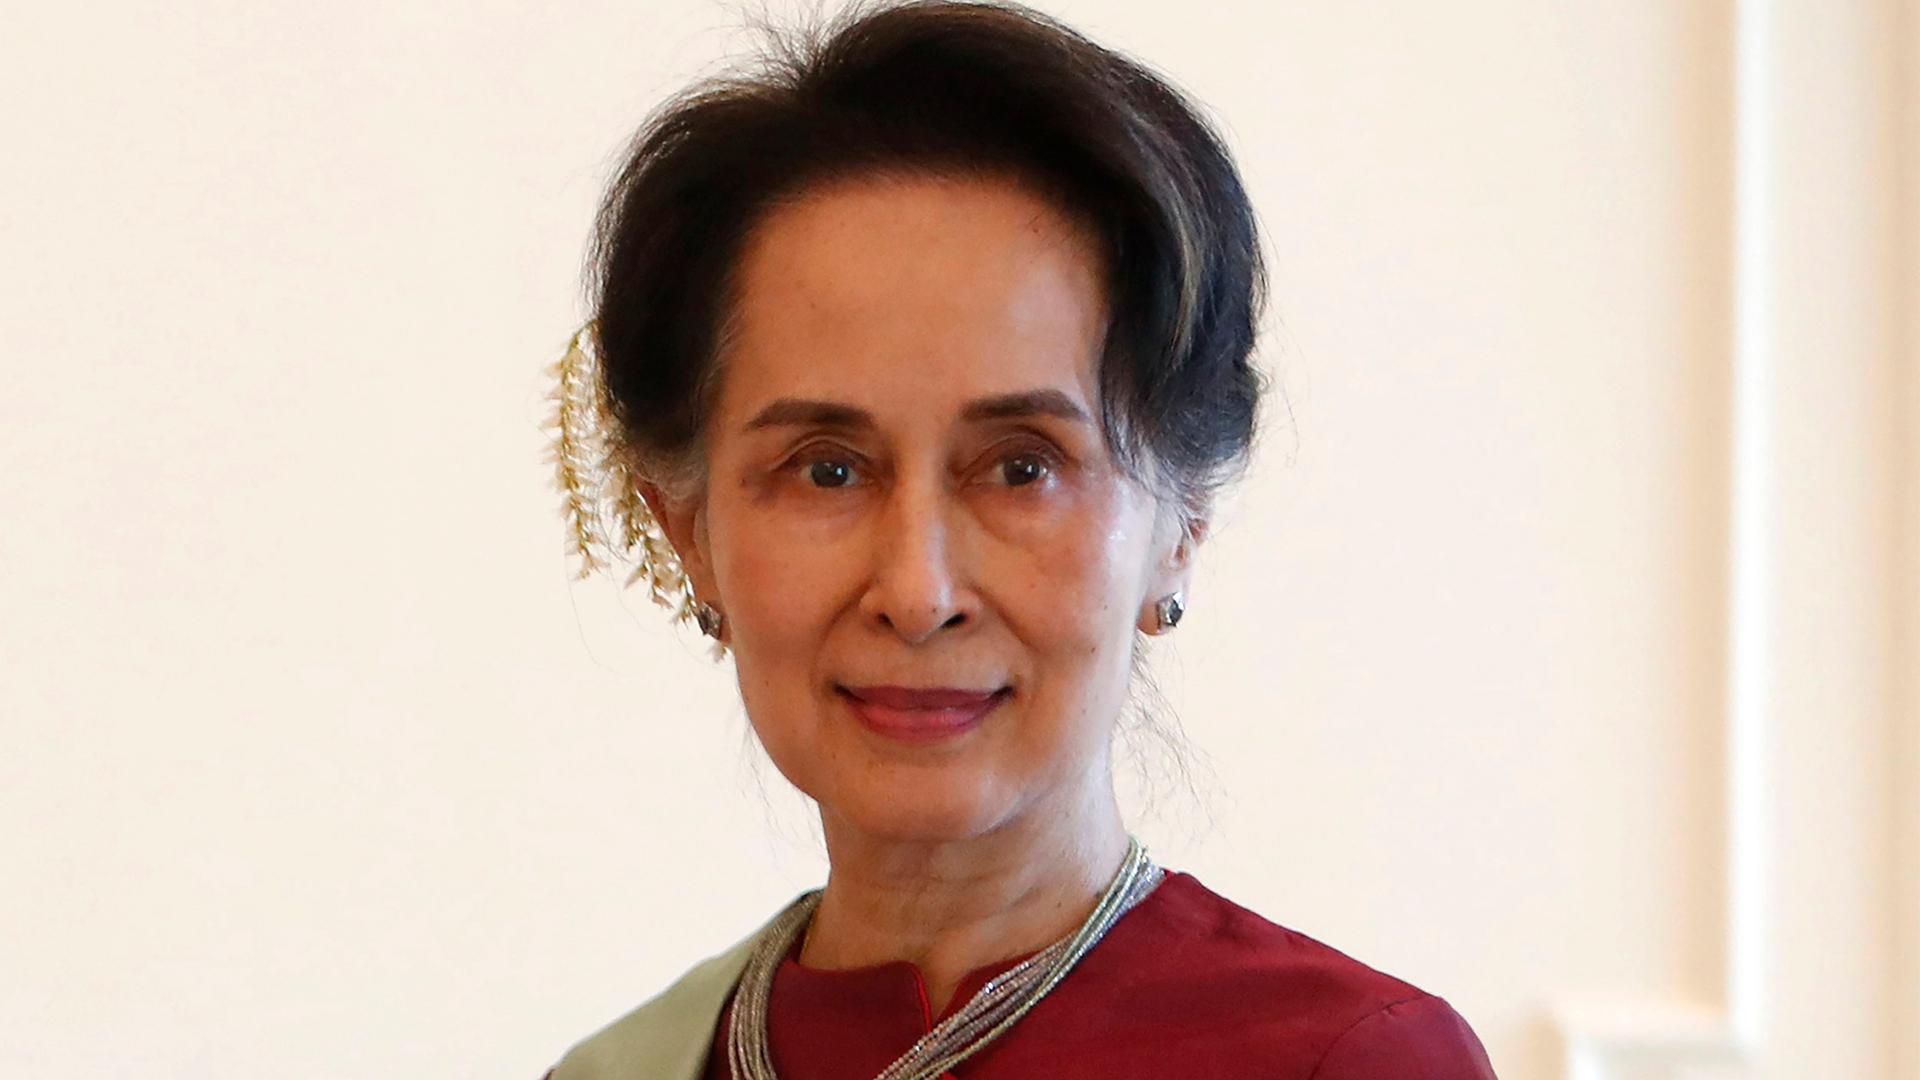 Die entmachtete De-facto-Regierungschefin Aung San Suu Kyi schaut in die Kamera.